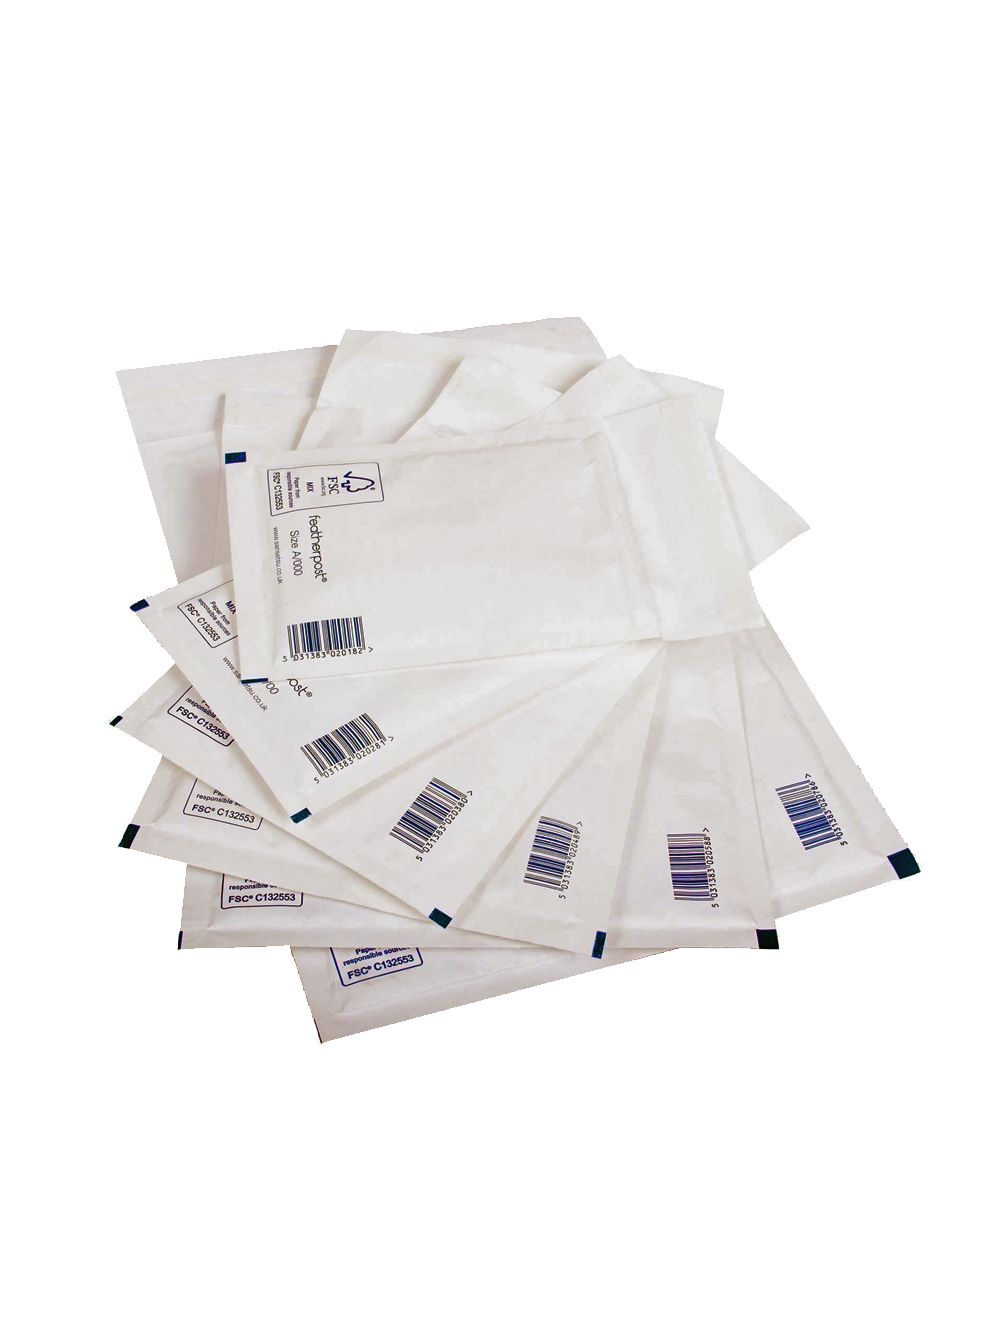 50 White Arofol A/000 Envelopes Bags FREE P&P 